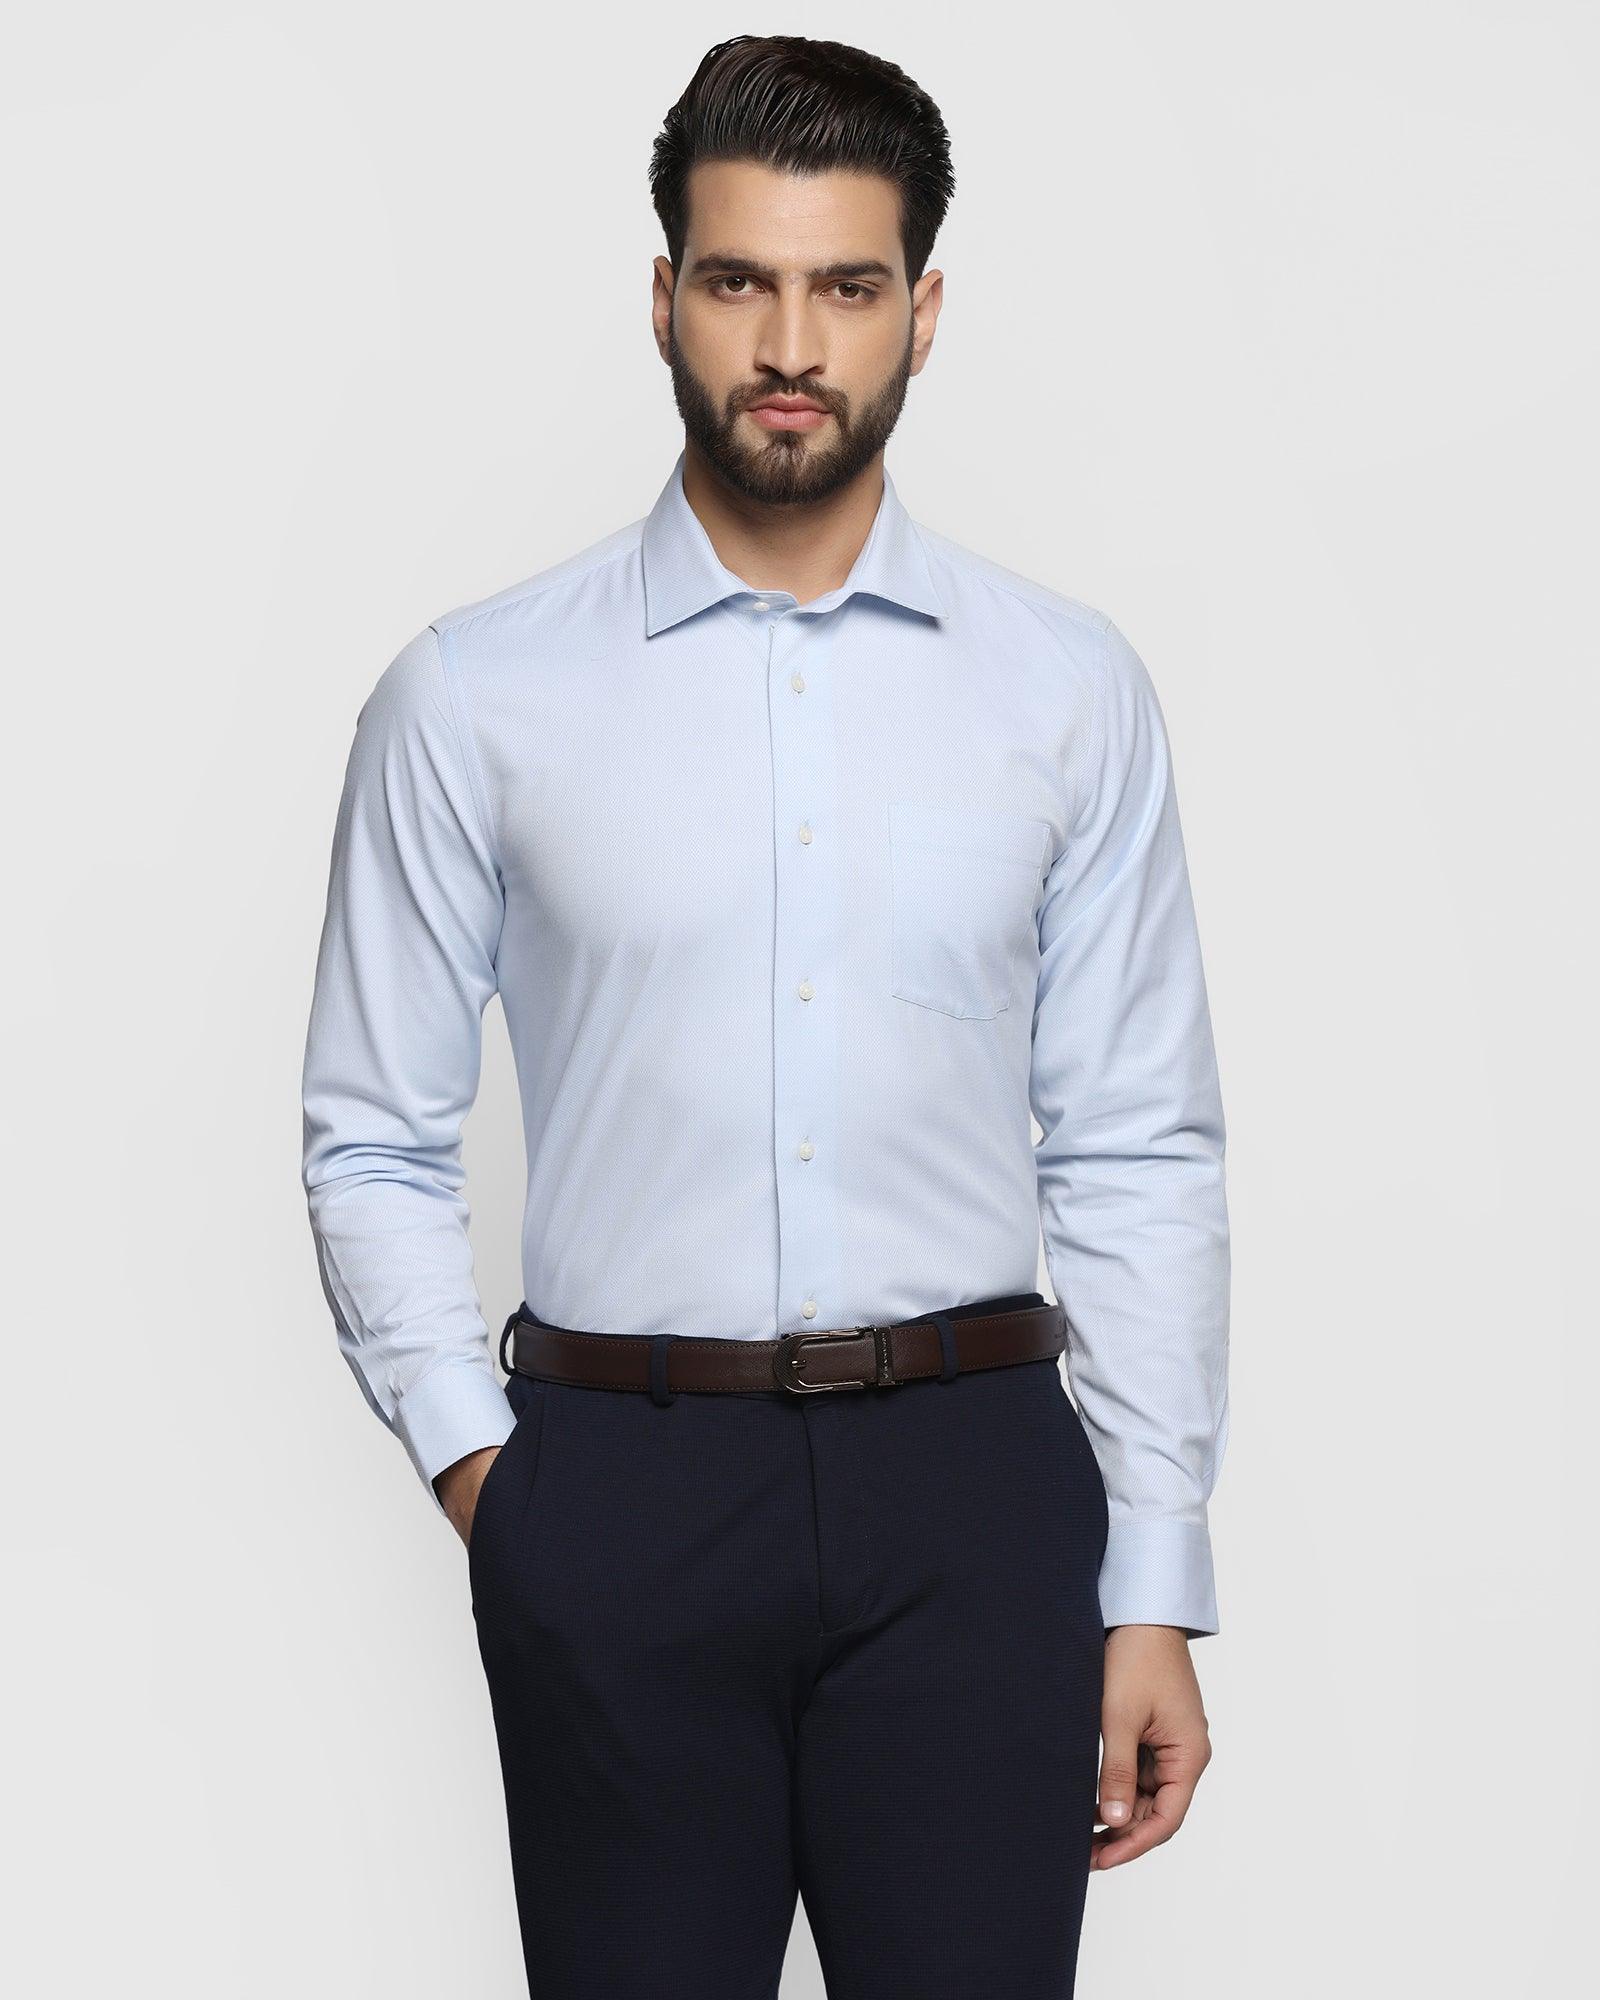 Temptech Formal Blue Textured Shirt - Dorien